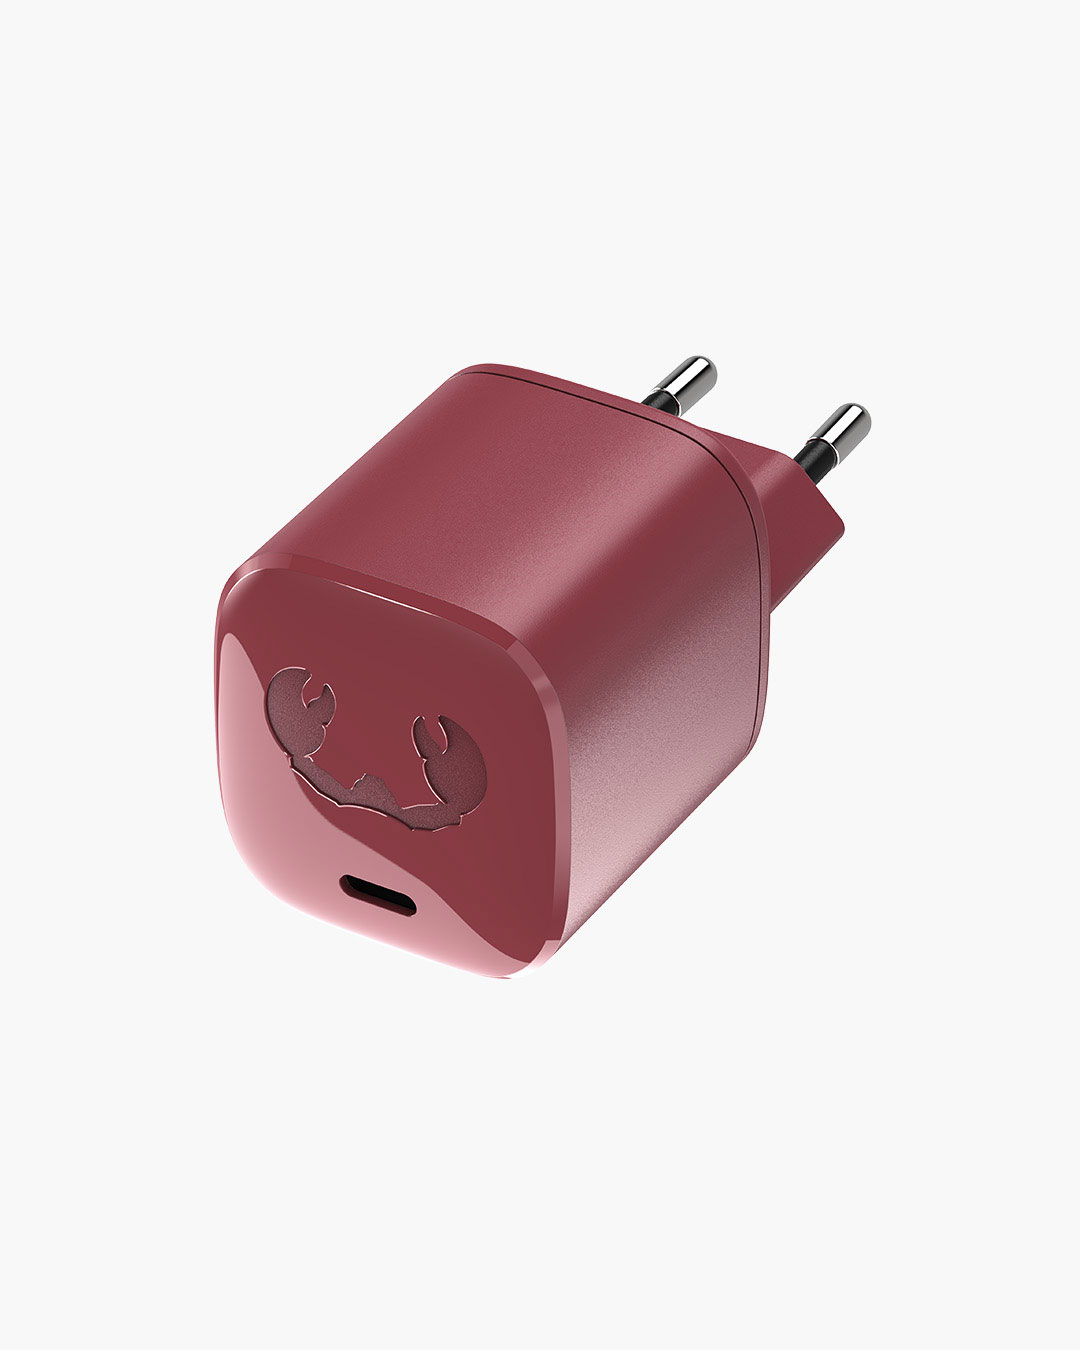 Fresh 'n Rebel - USB-C Mini Charger 30W - Ruby Red